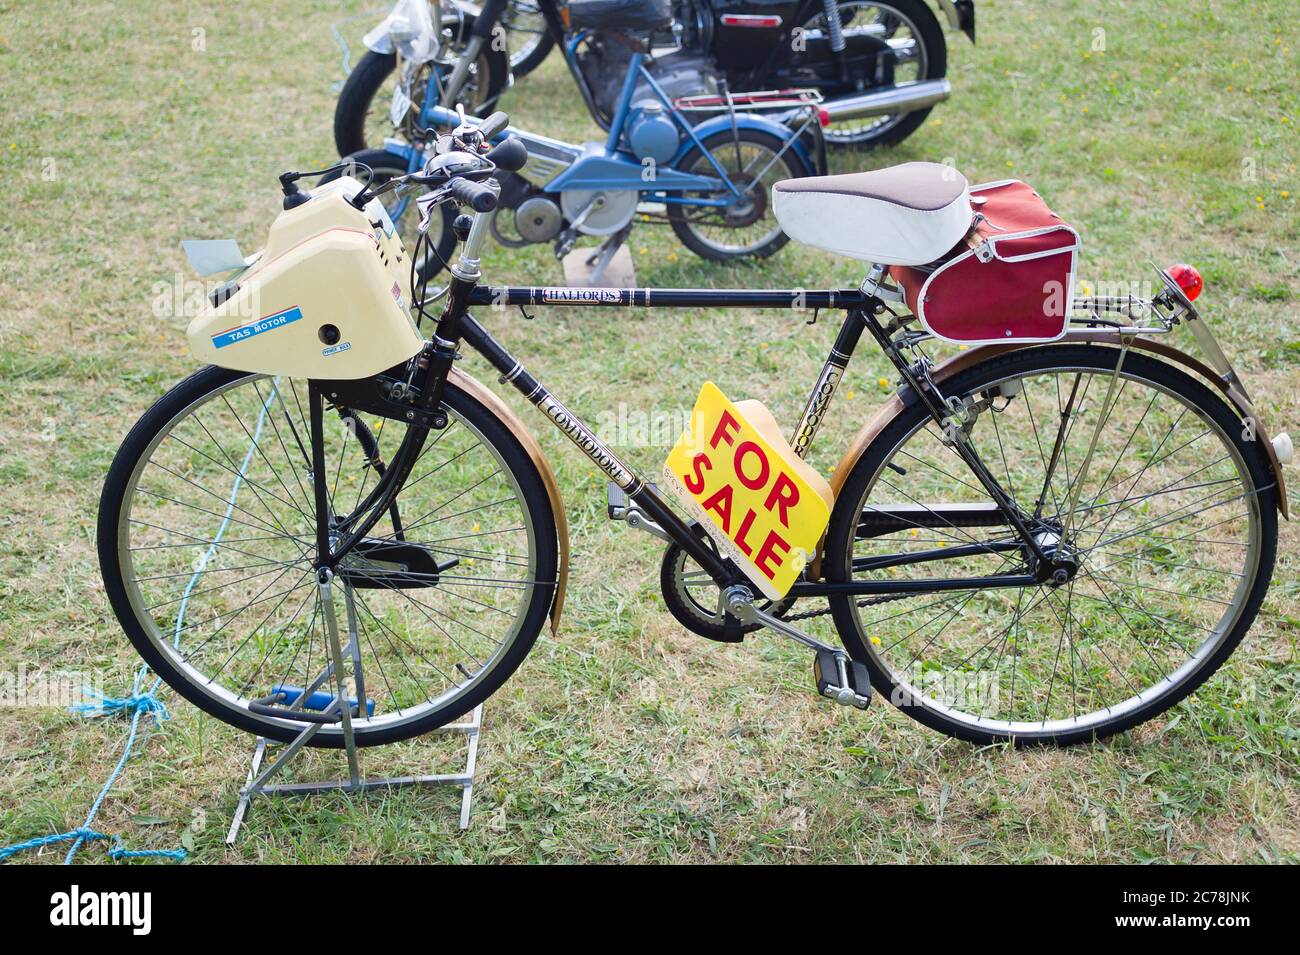 Una bicicleta de pedal de los años 70 adaptada para proporcionar un motor de combución externa para la asistencia de potencia en la carretera en el Reino Unido Foto de stock